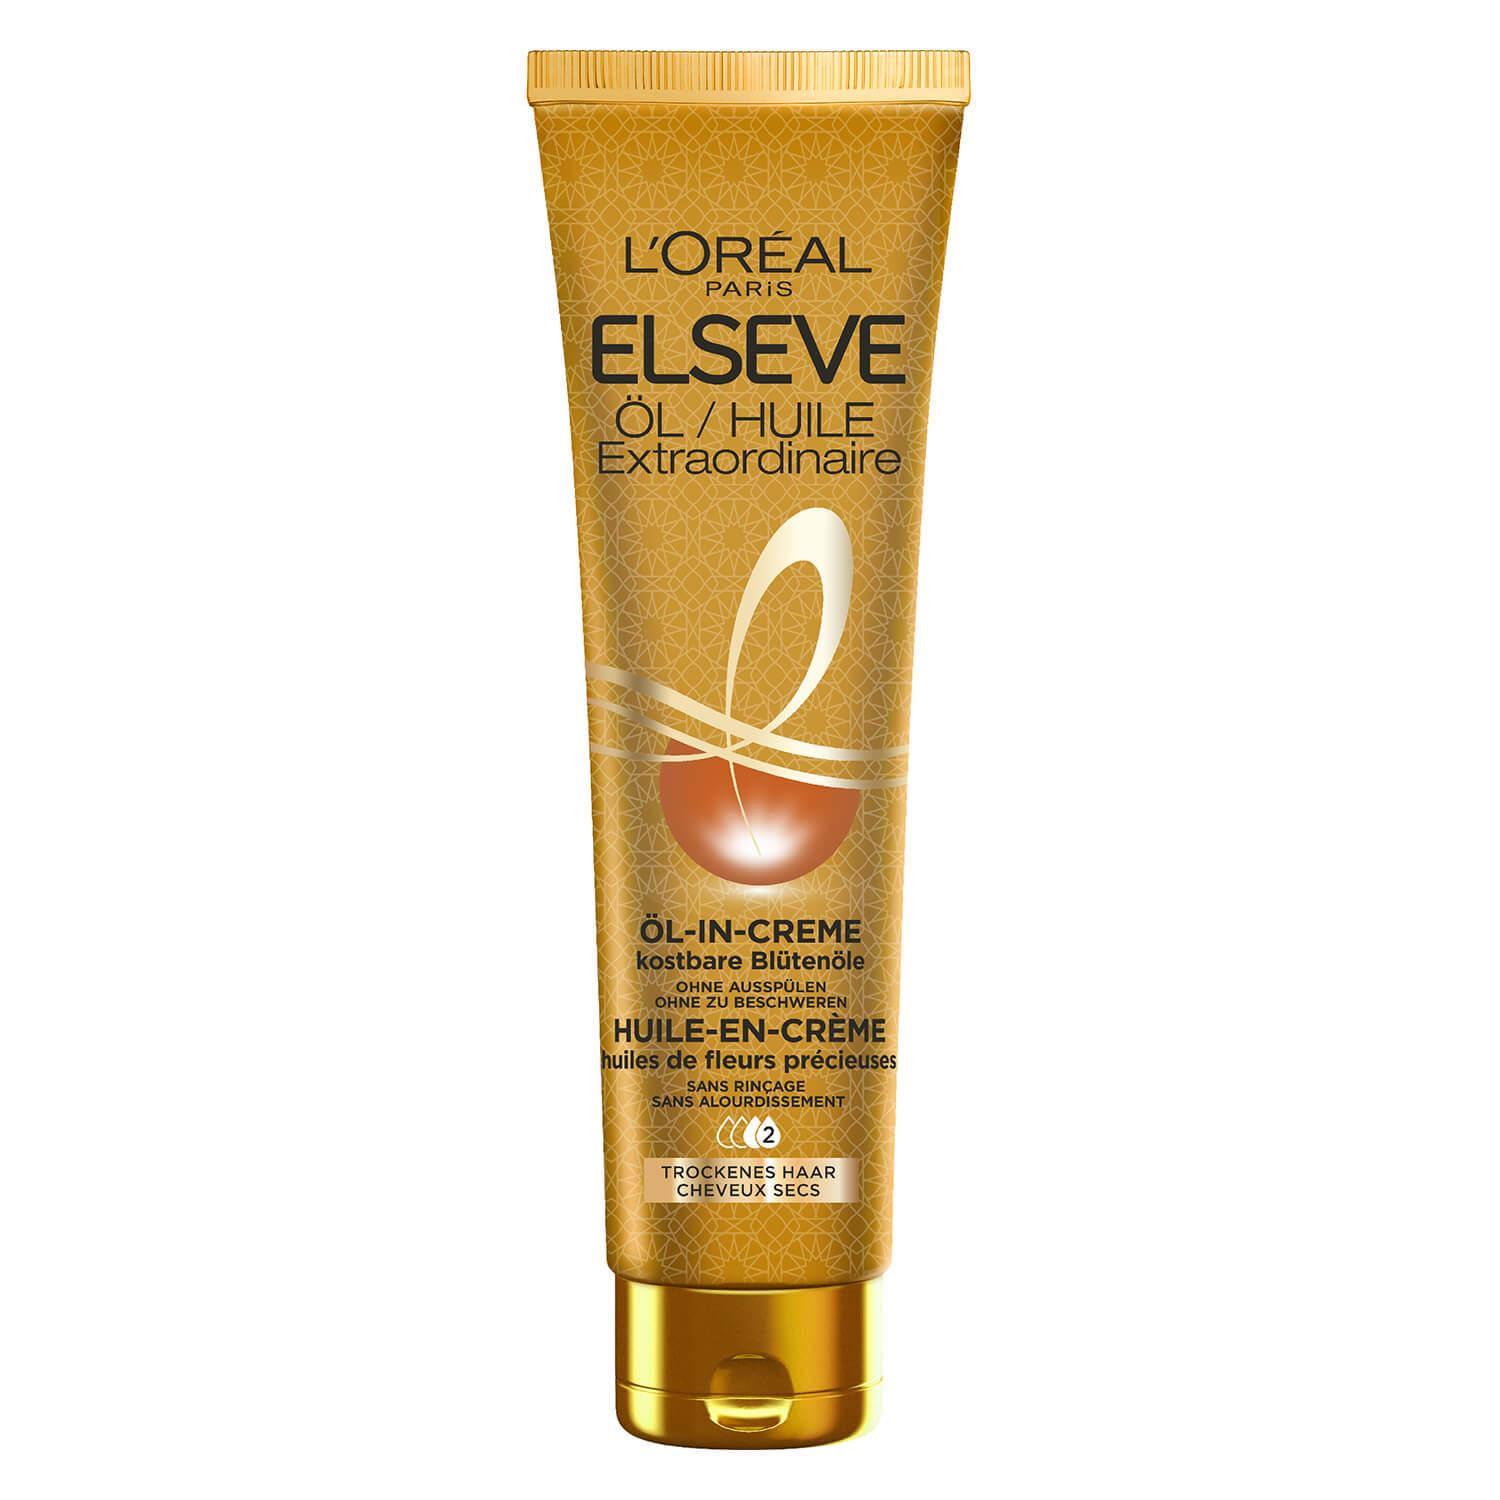 LOréal Elseve Haircare - Unique oil-in-cream